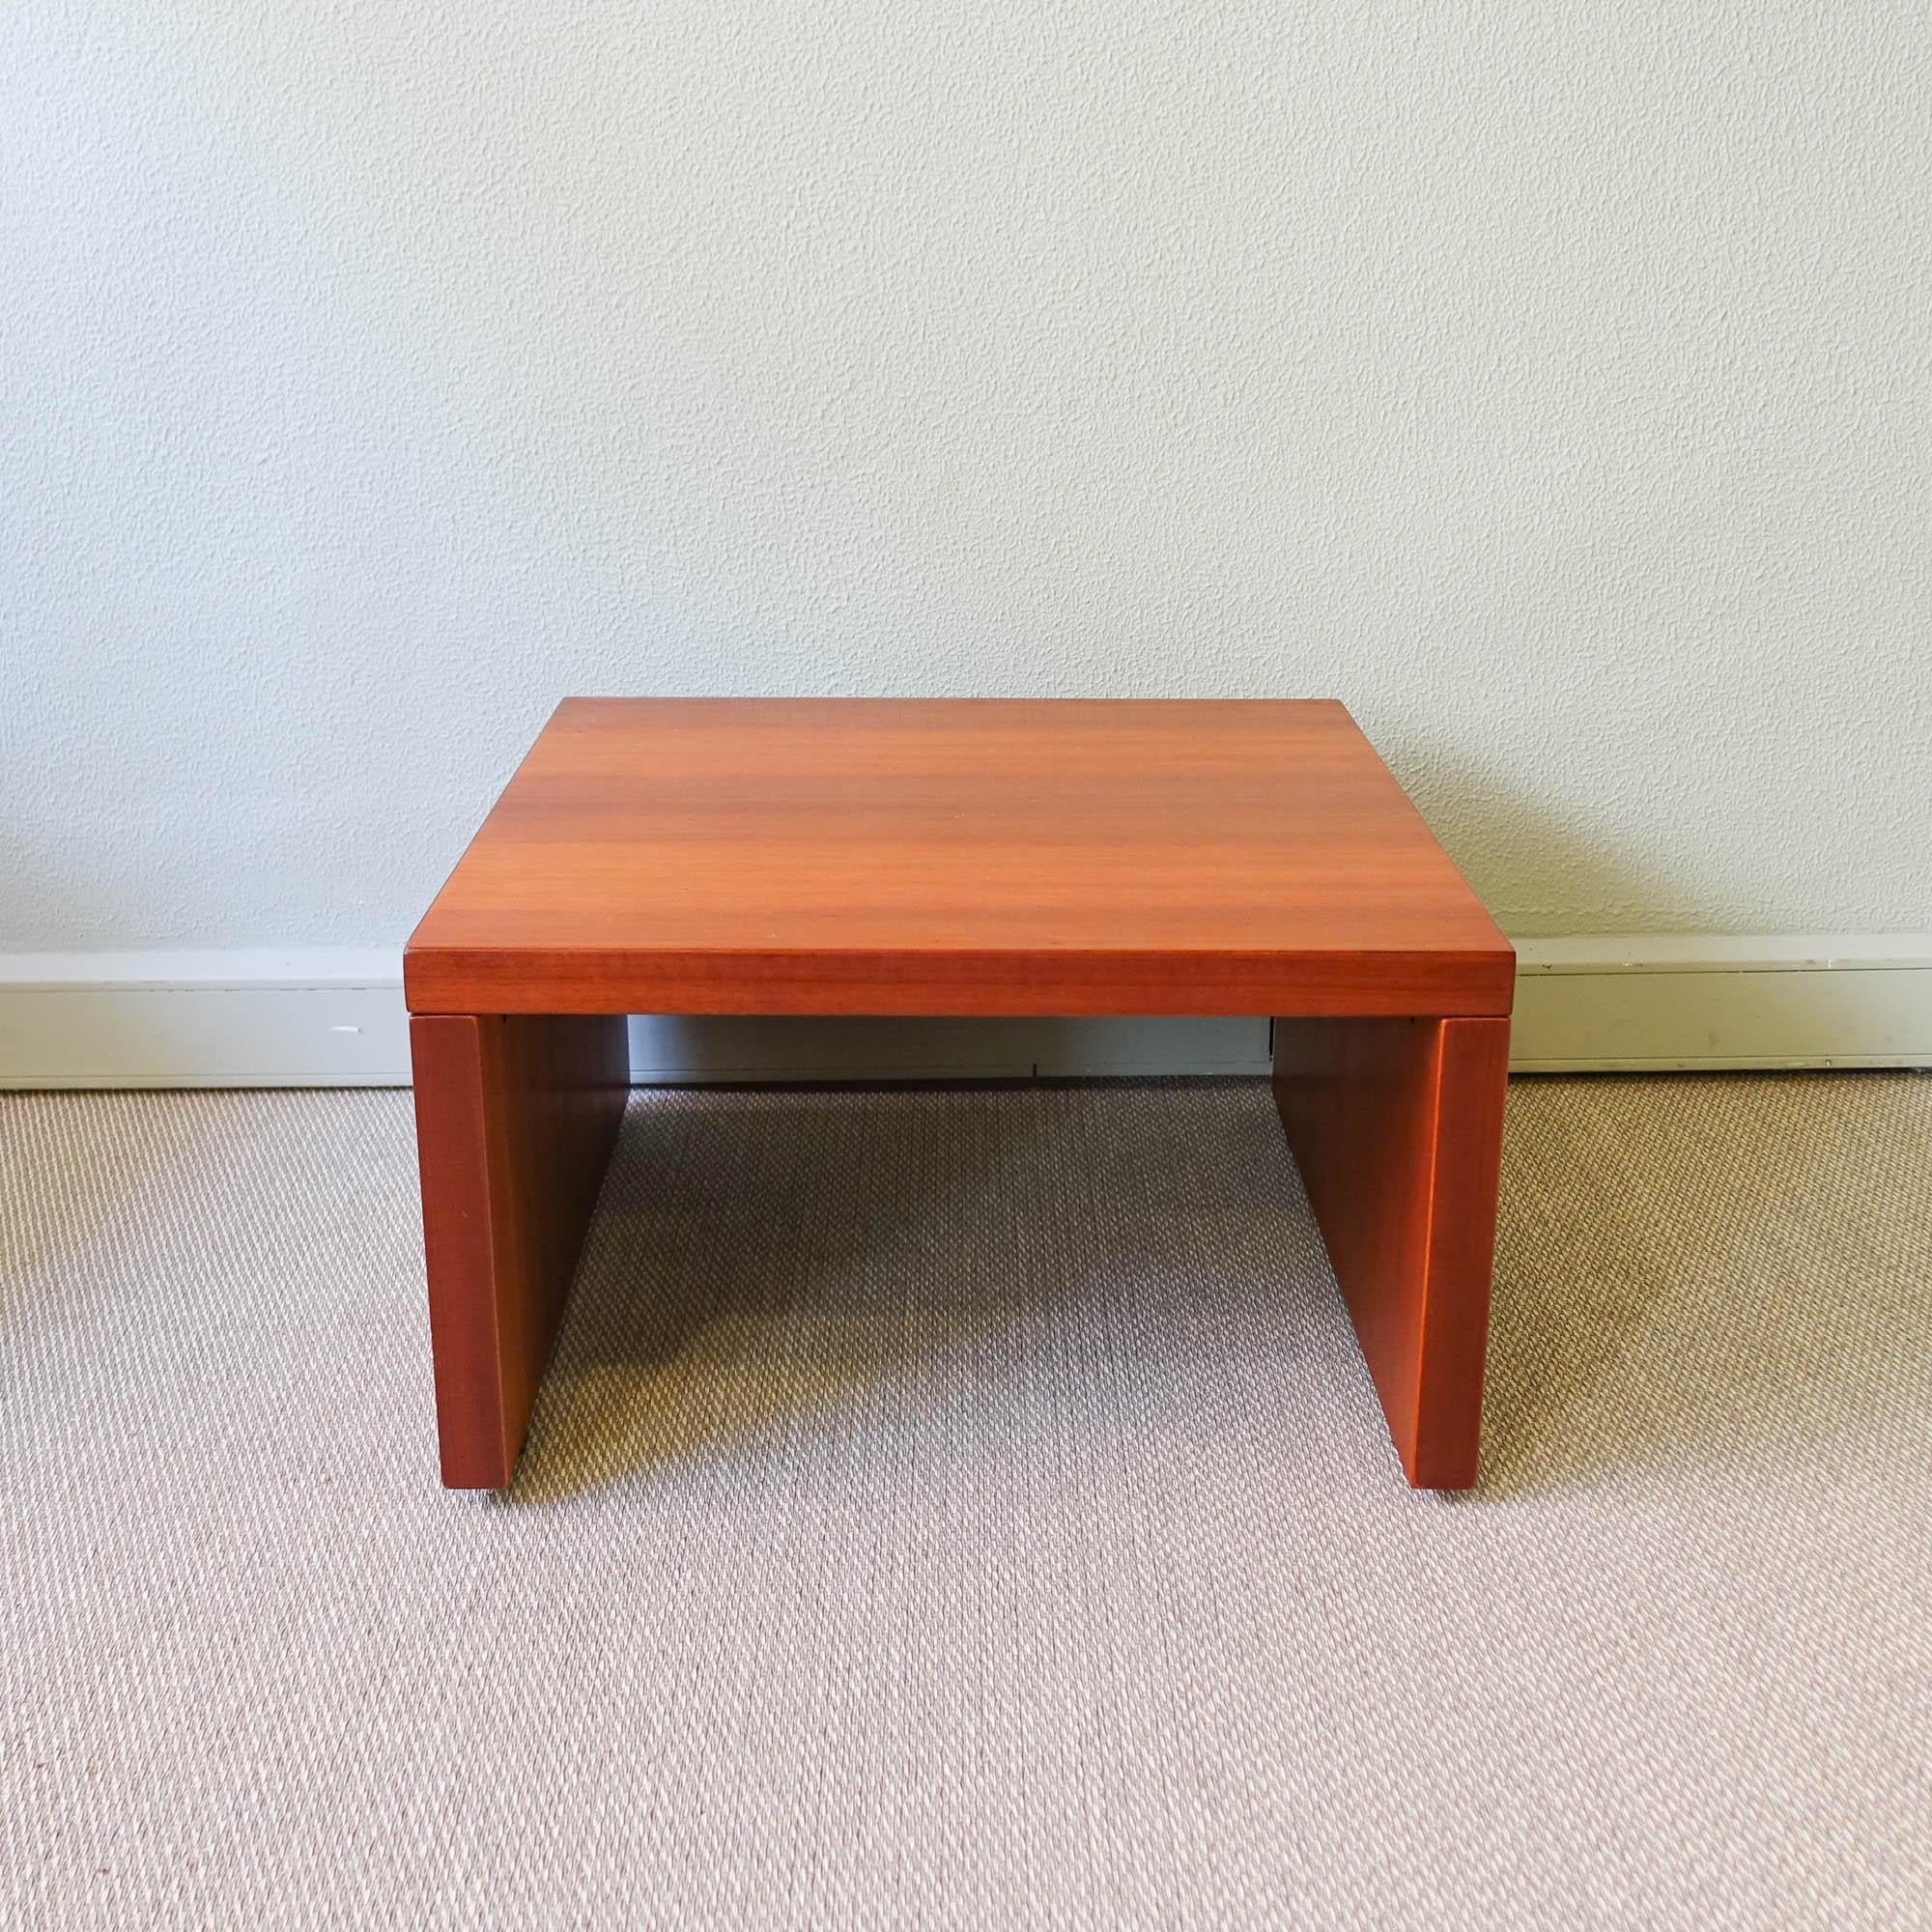 Cette table d'appoint a été conçue par Sergio Rodrigues et produite par OCA, au Brésil, dans les années 1970. Il est fabriqué en bois exotique, avec un design simple qui fait ressortir la beauté du bois. Il a été entièrement restauré. Avec